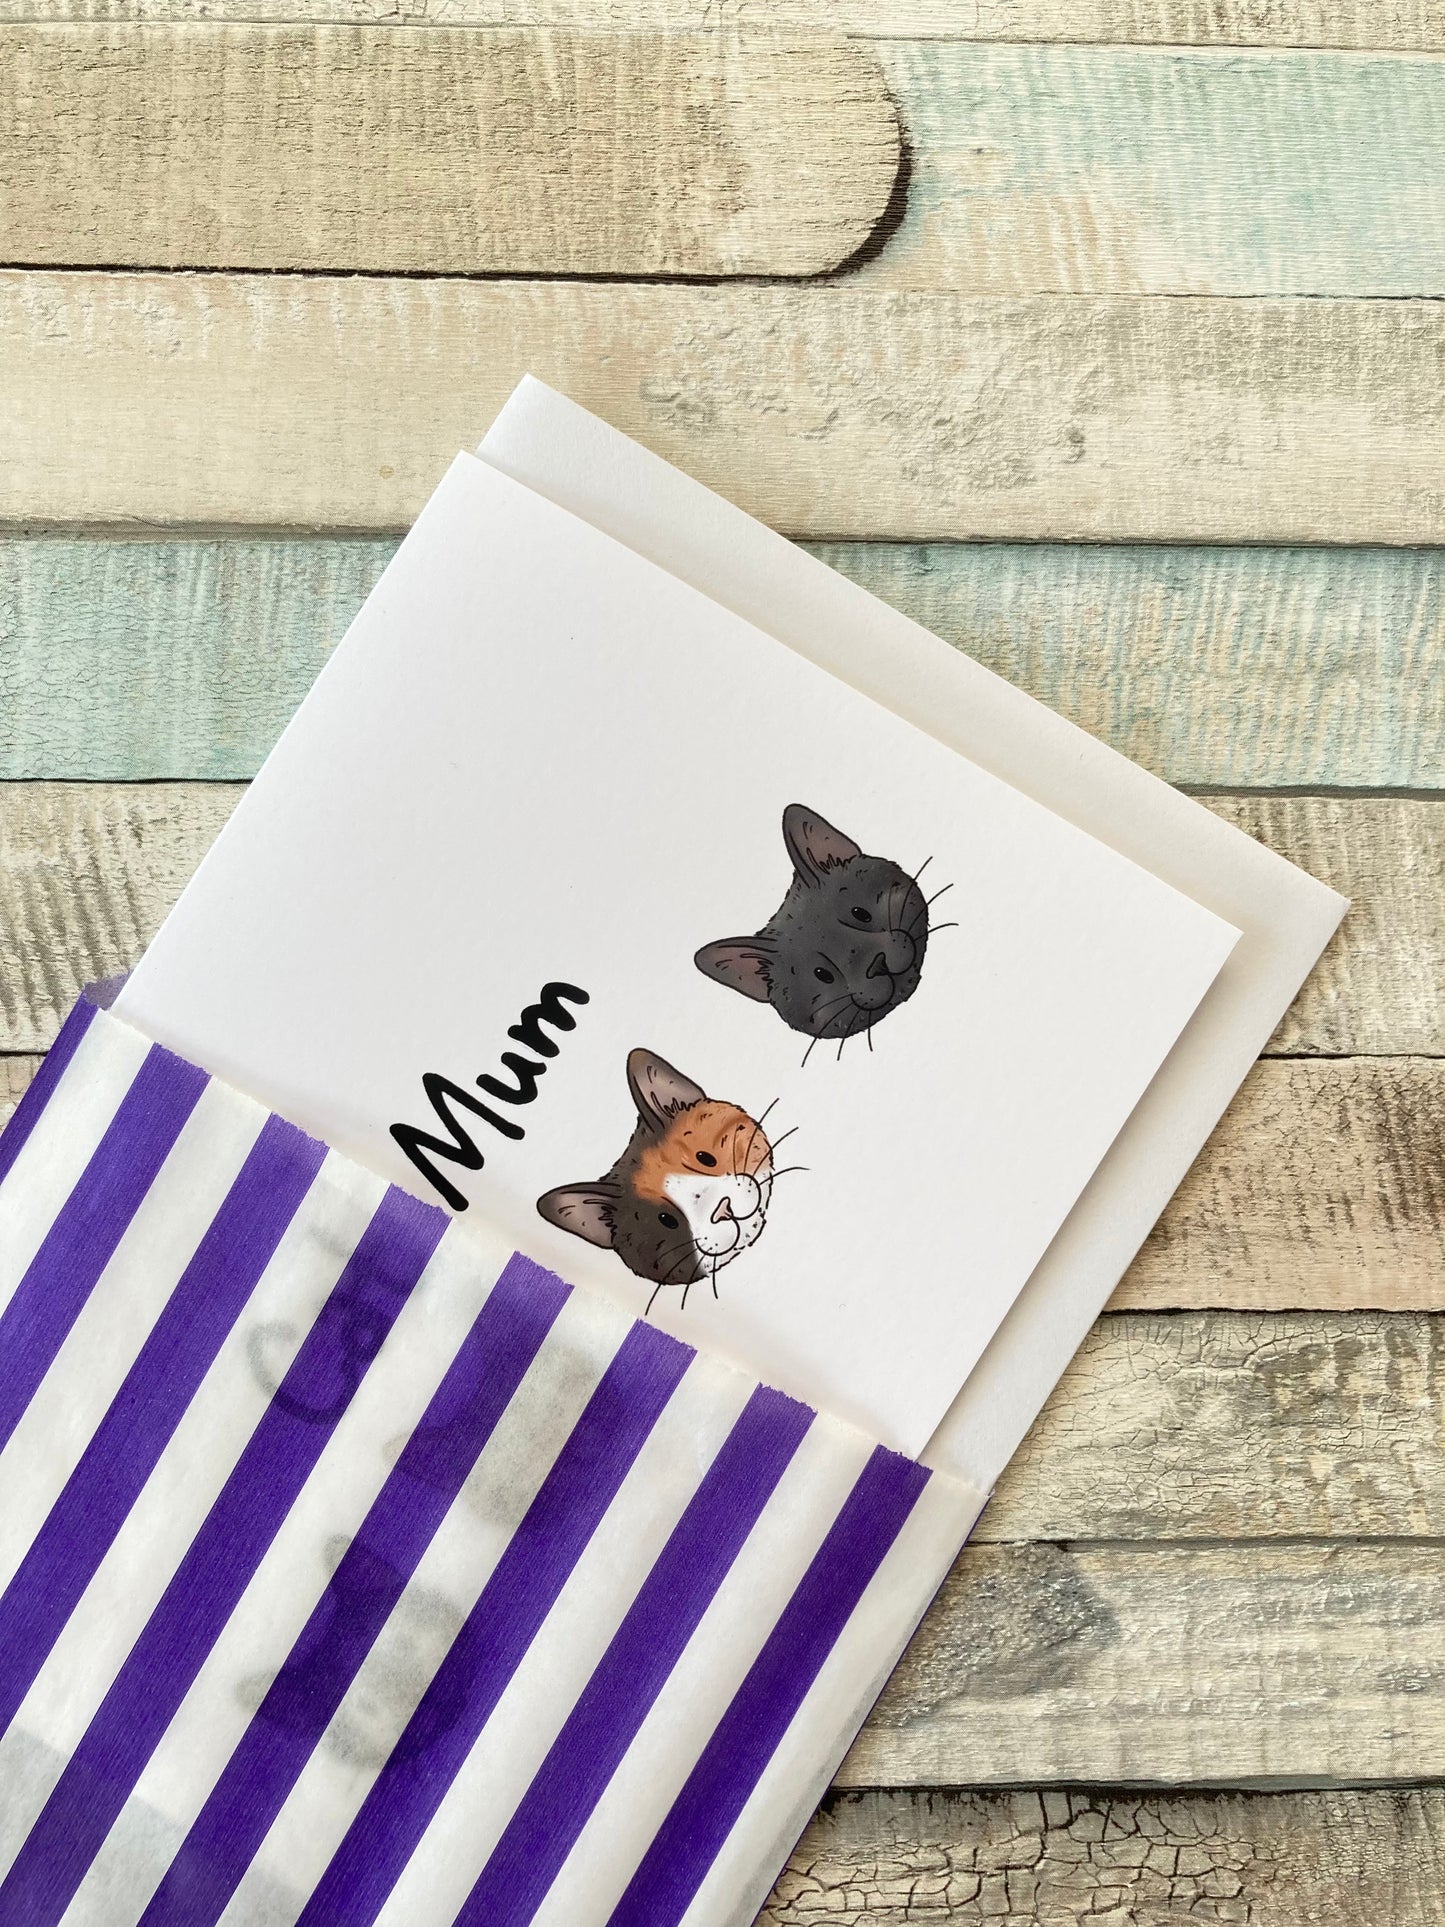 Cat Mum | Cat Greeting Card